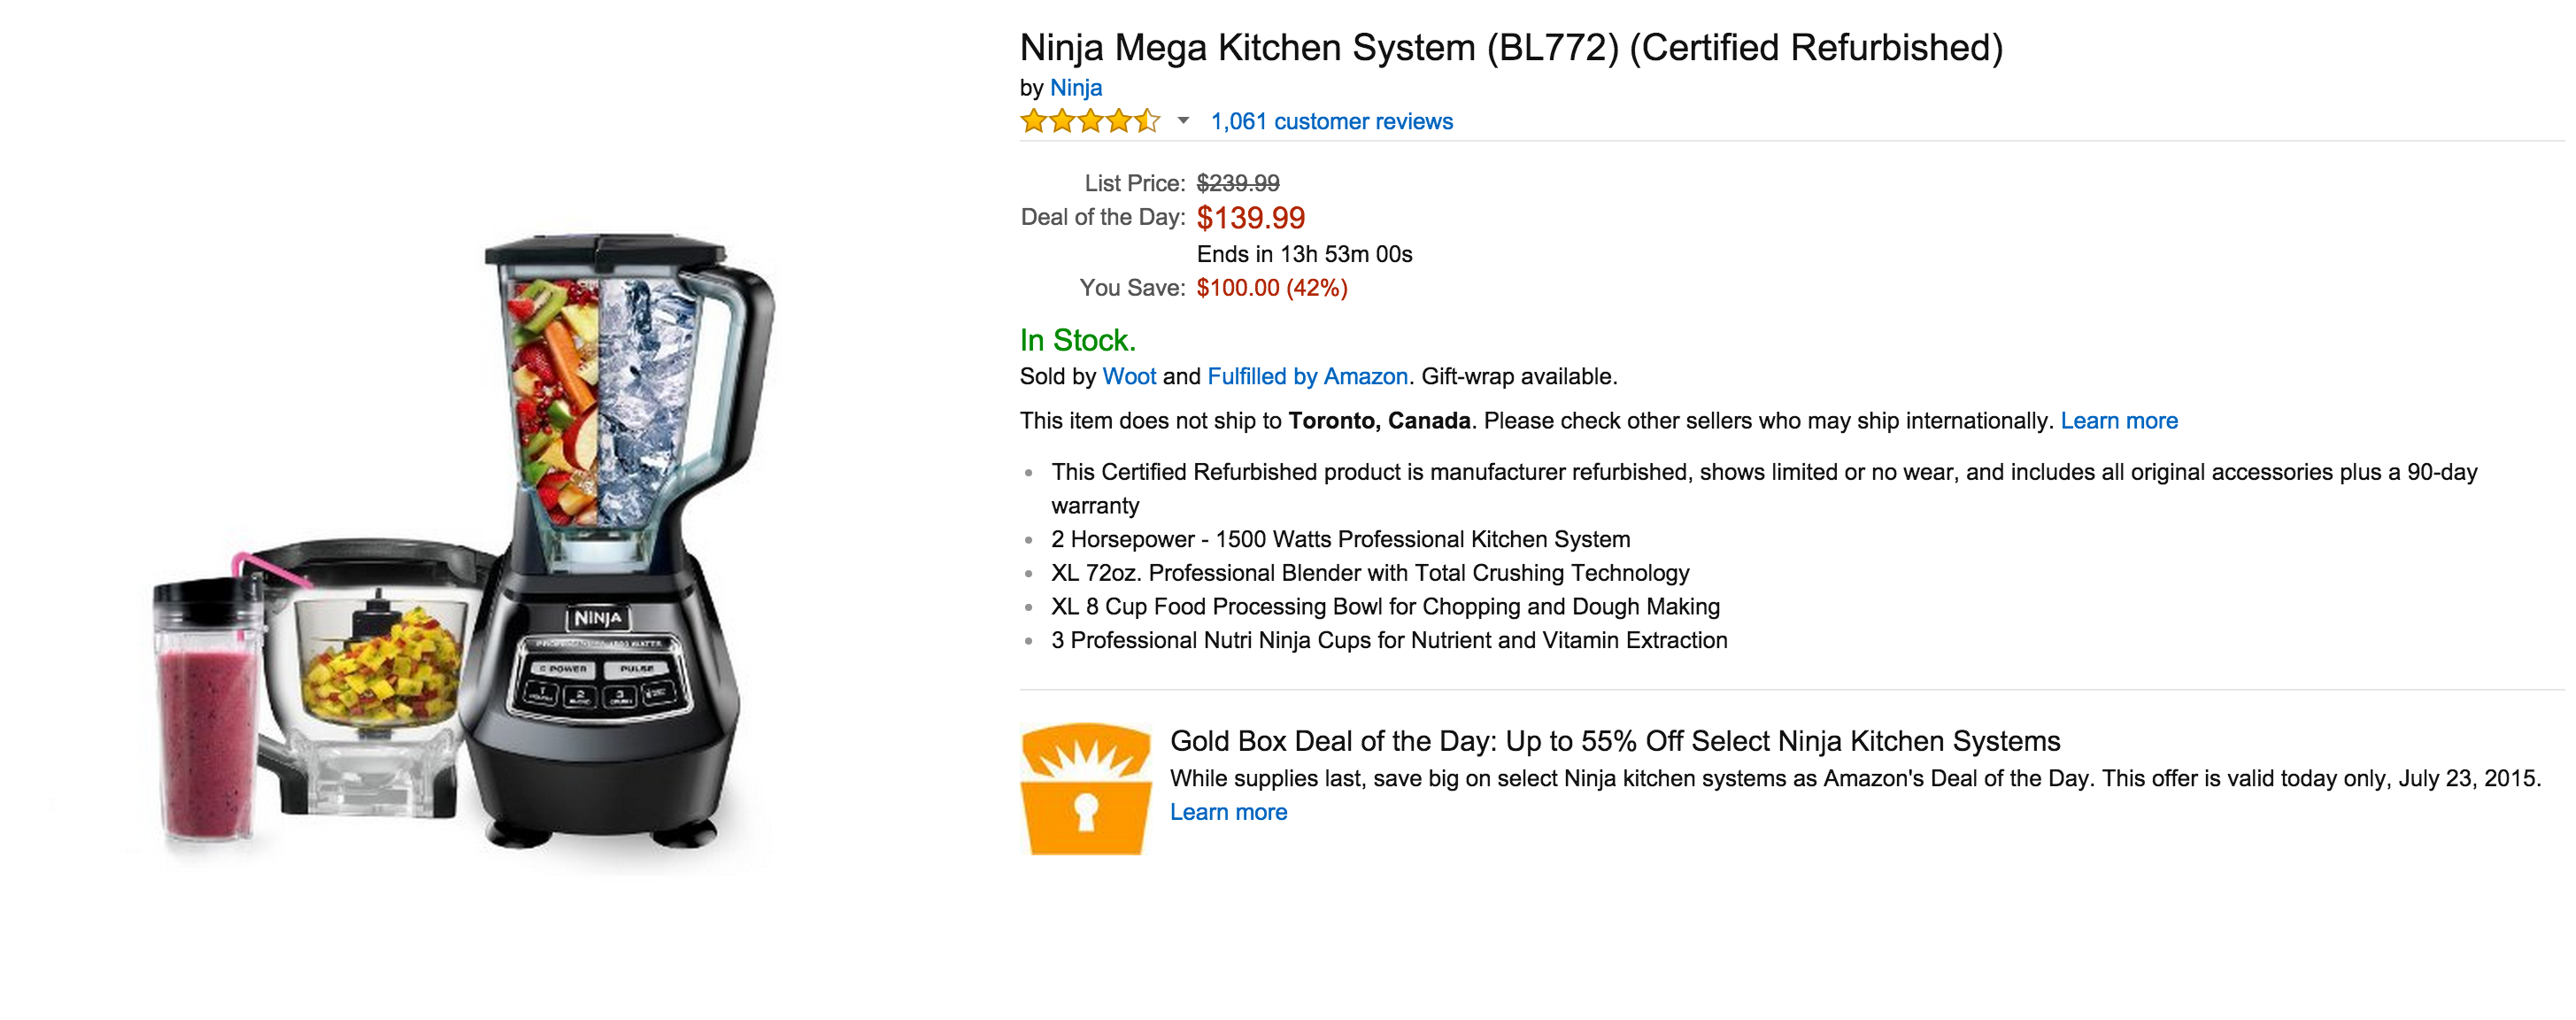 https://9to5toys.com/wp-content/uploads/sites/5/2015/07/ninja-mega-kitchen-system-bl772-sale-03.png